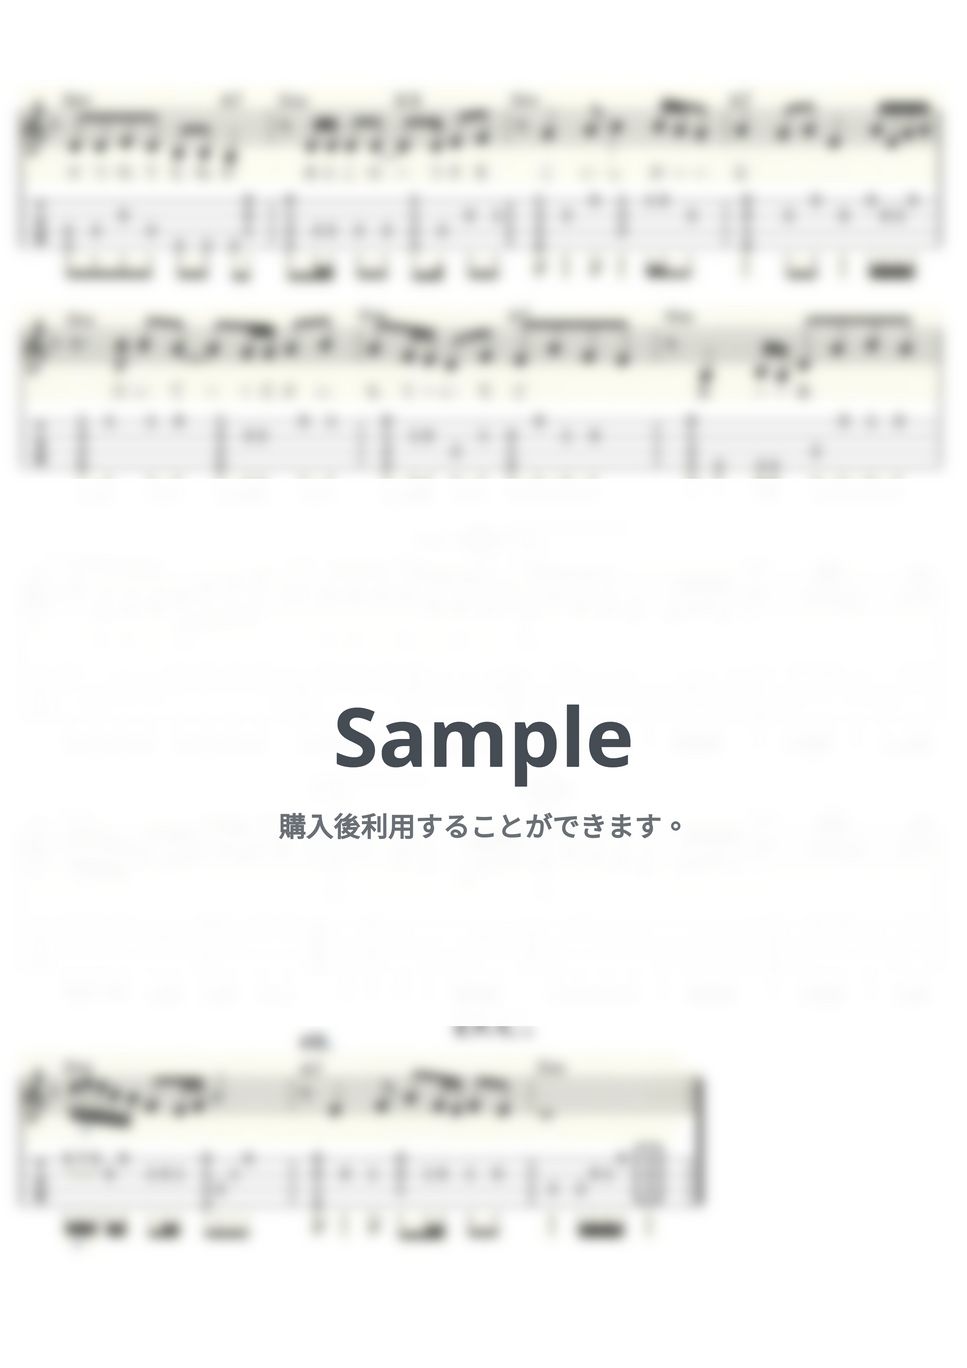 五木ひろし - 細雪 (ｳｸﾚﾚｿﾛ/Low-G/中級) by ukulelepapa